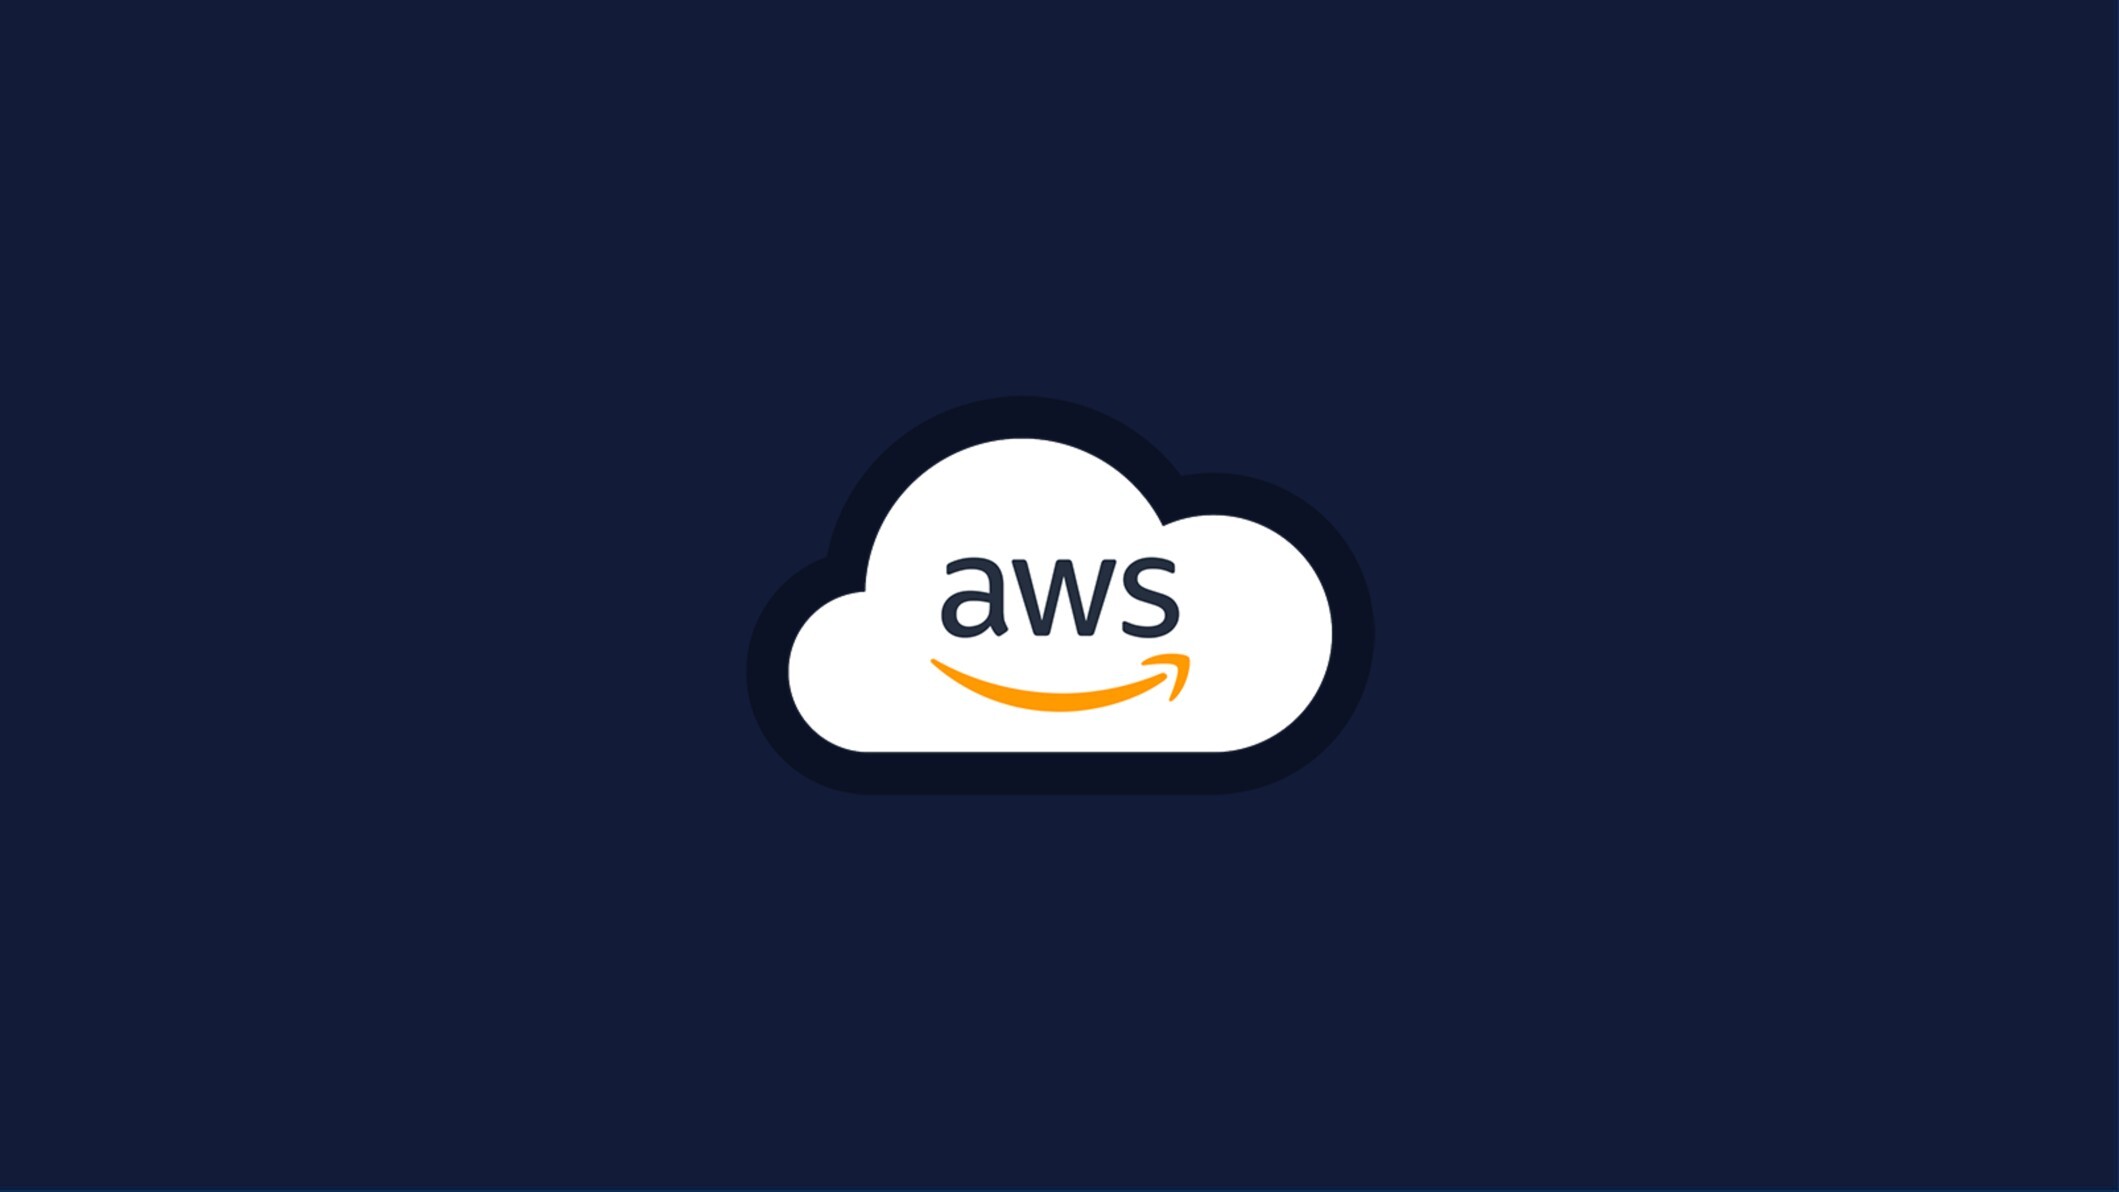 AWS Cloud computing